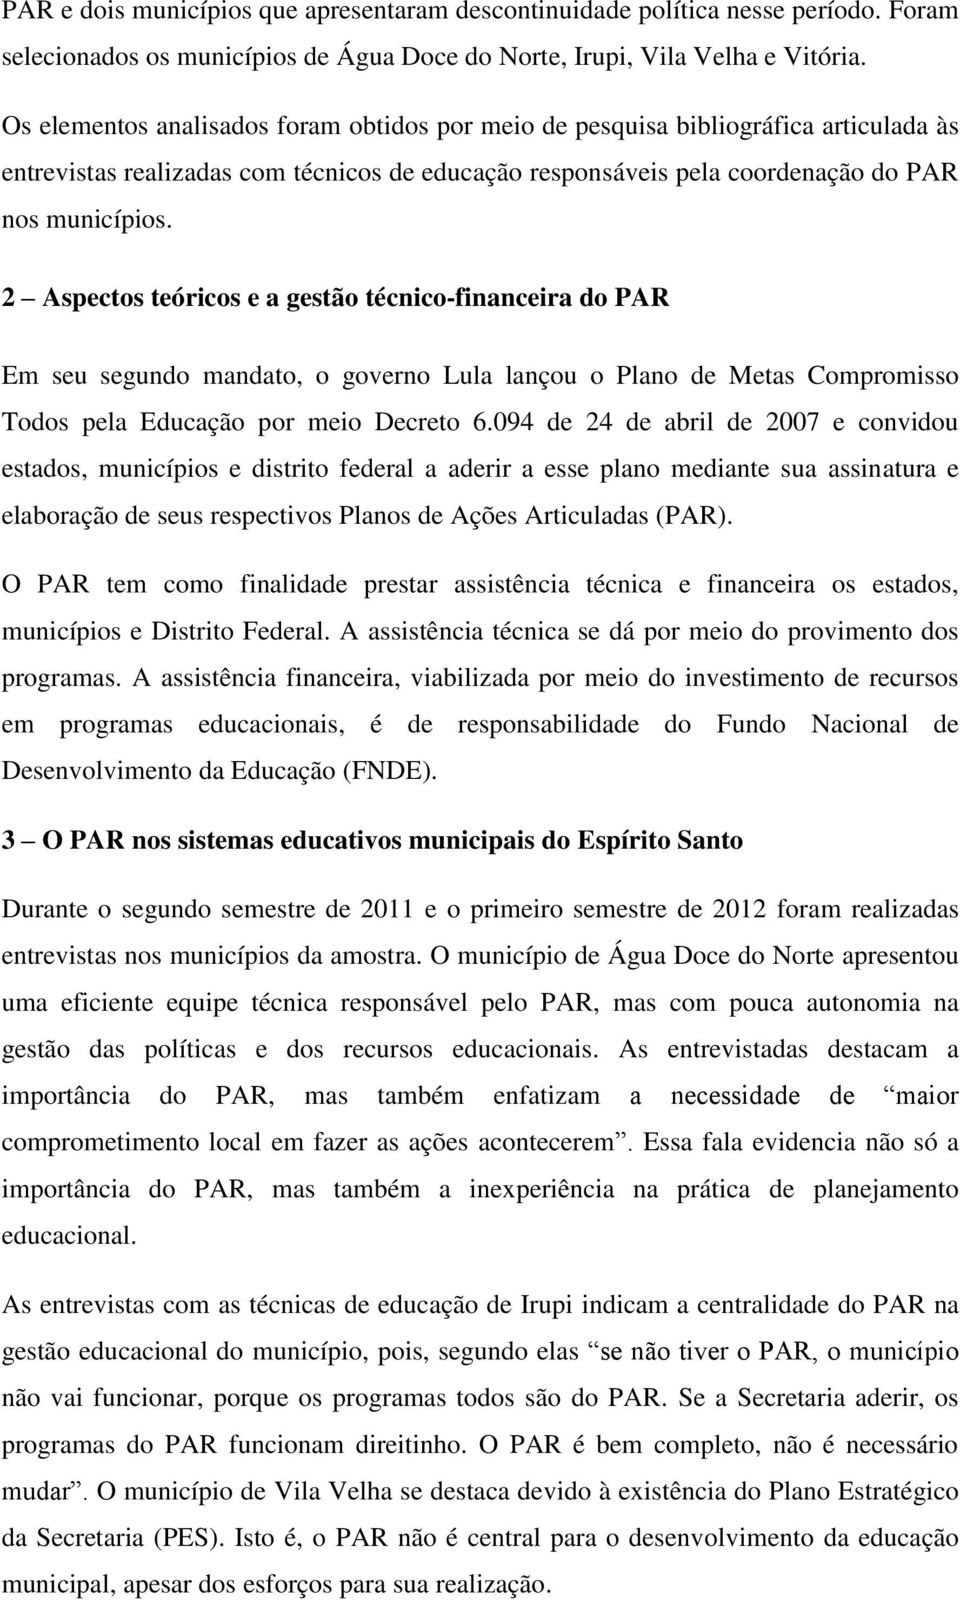 2 Aspectos teóricos e a gestão técnico-financeira do PAR Em seu segundo mandato, o governo Lula lançou o Plano de Metas Compromisso Todos pela Educação por meio Decreto 6.